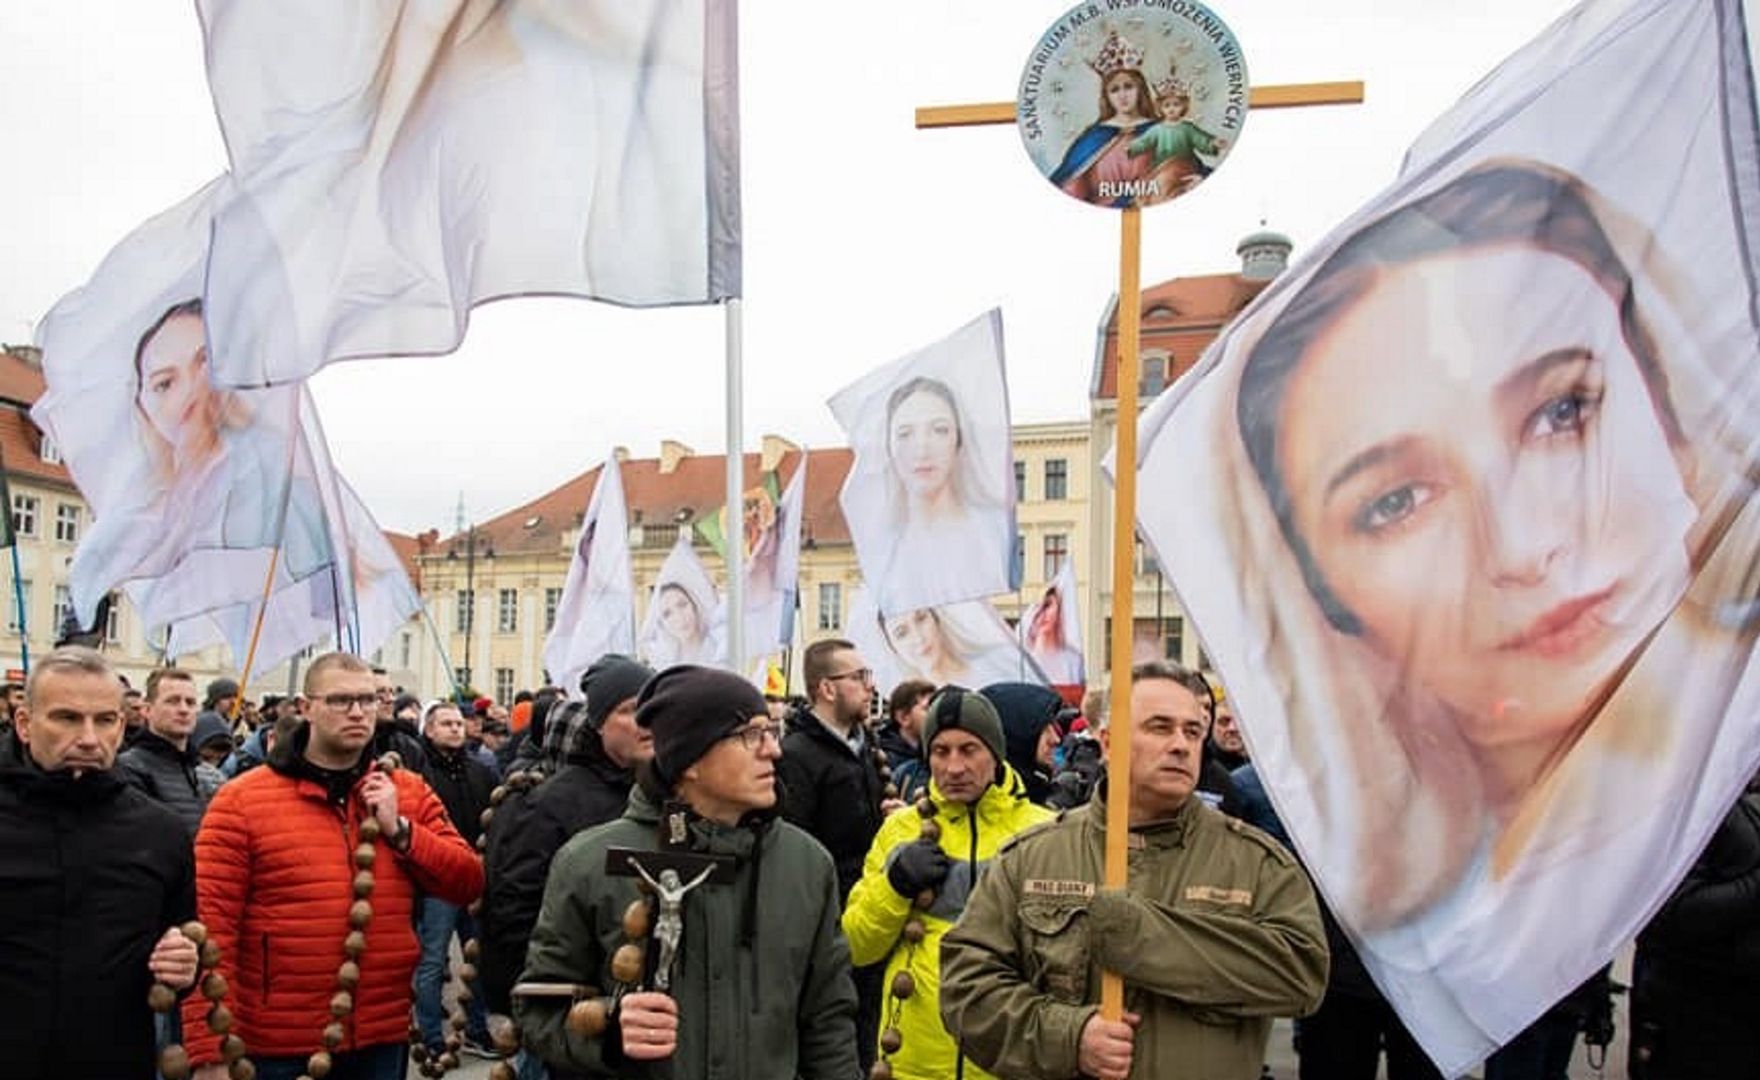 Wojownicy Maryi wyszli na ulice Bydgoszczy. Ludzie w szoku